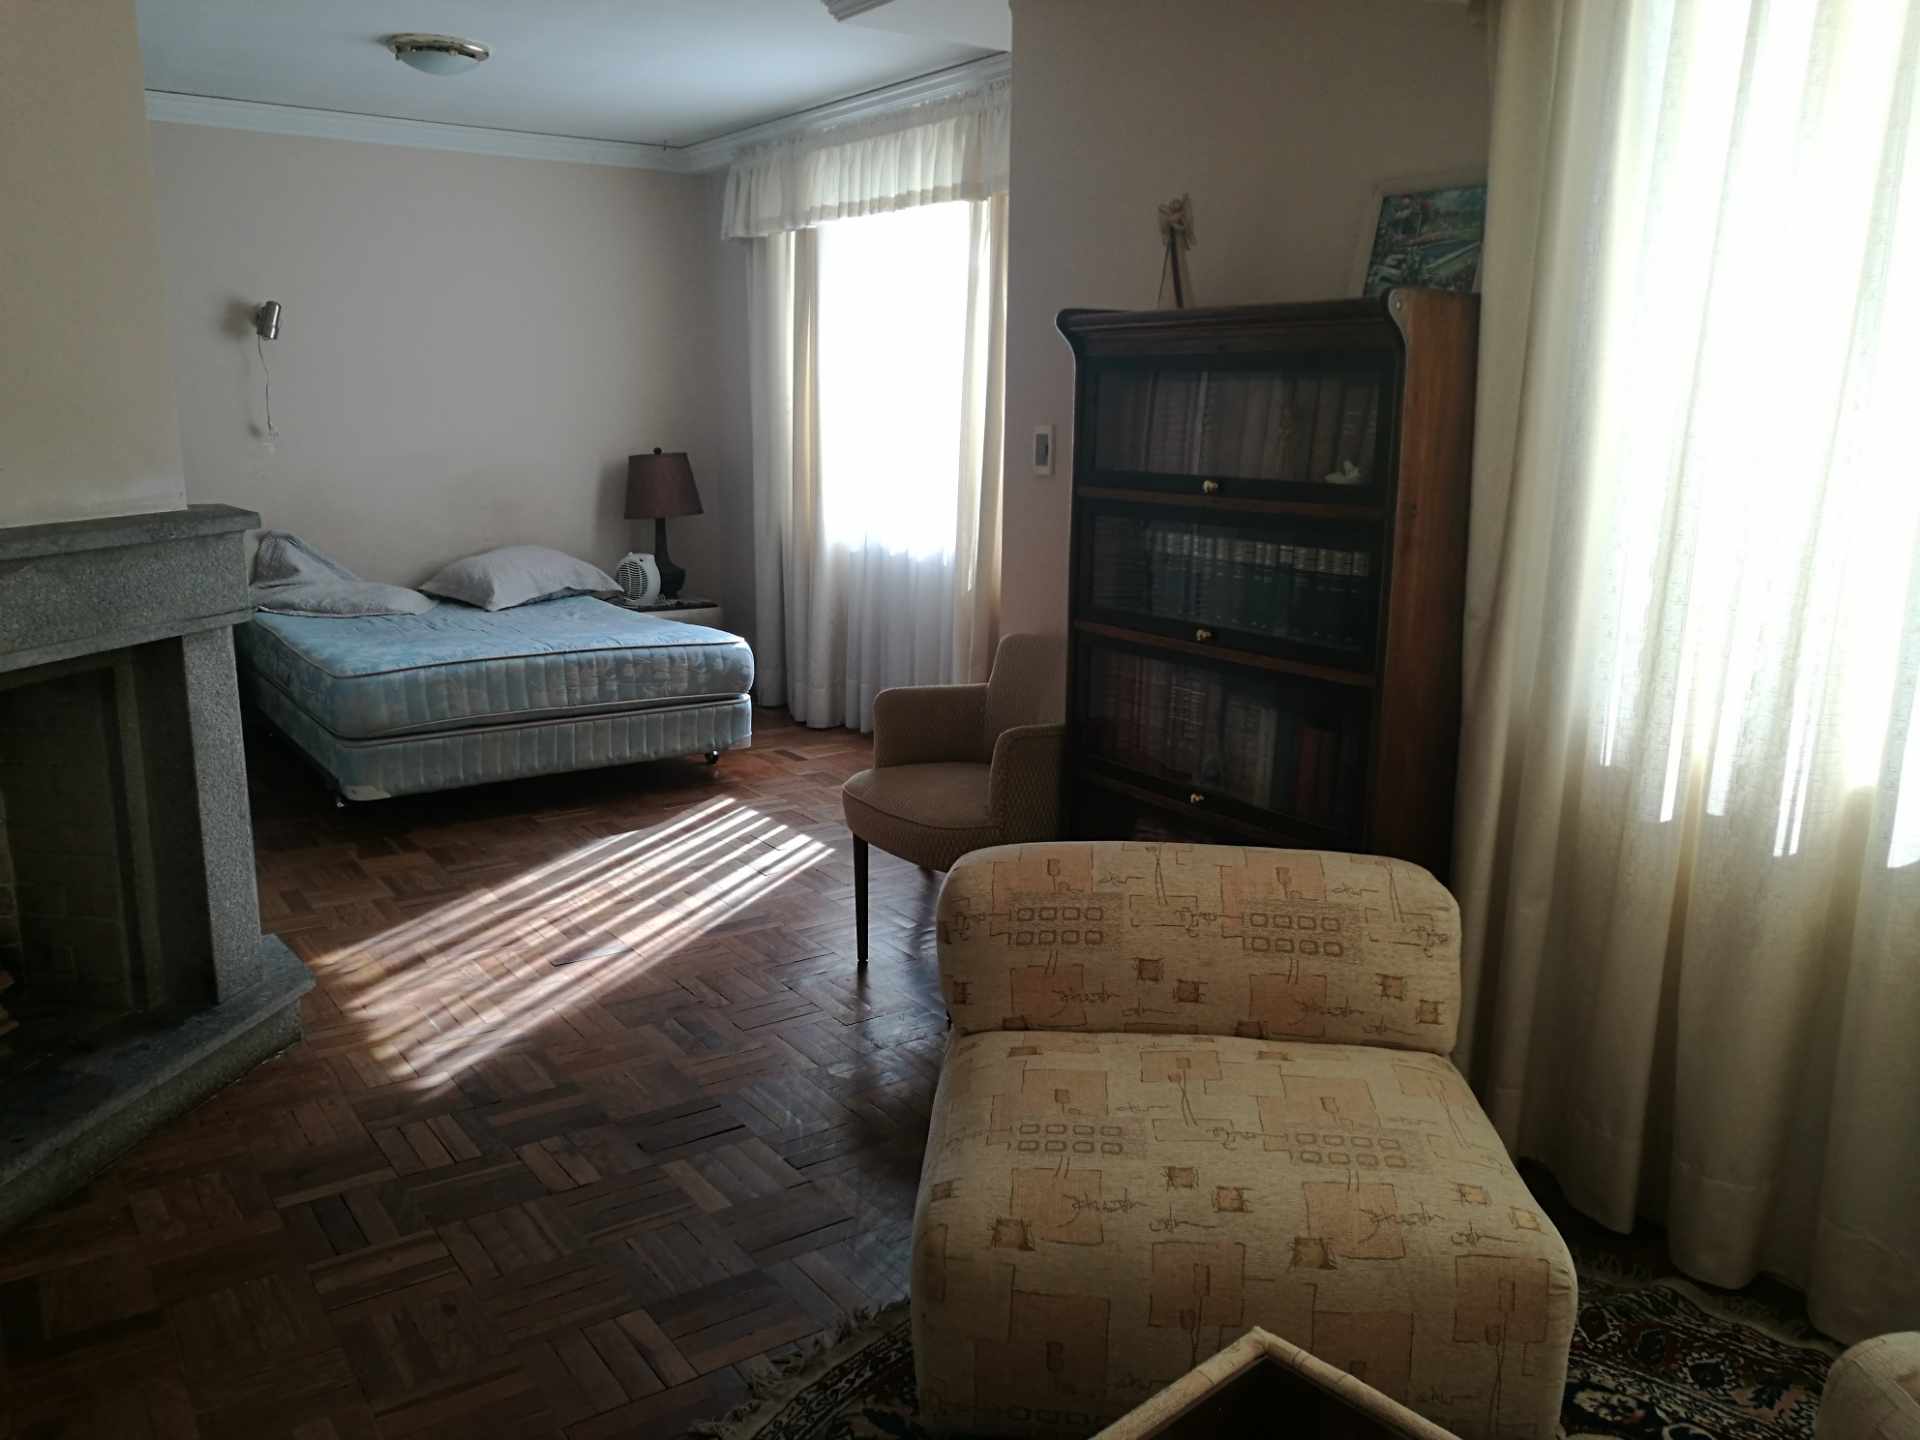 Departamento Los Nuevos Pinos bonito departamento amoblado y equipado de 2 dormitorios en suite, living - comedor, chimenea. Foto 5